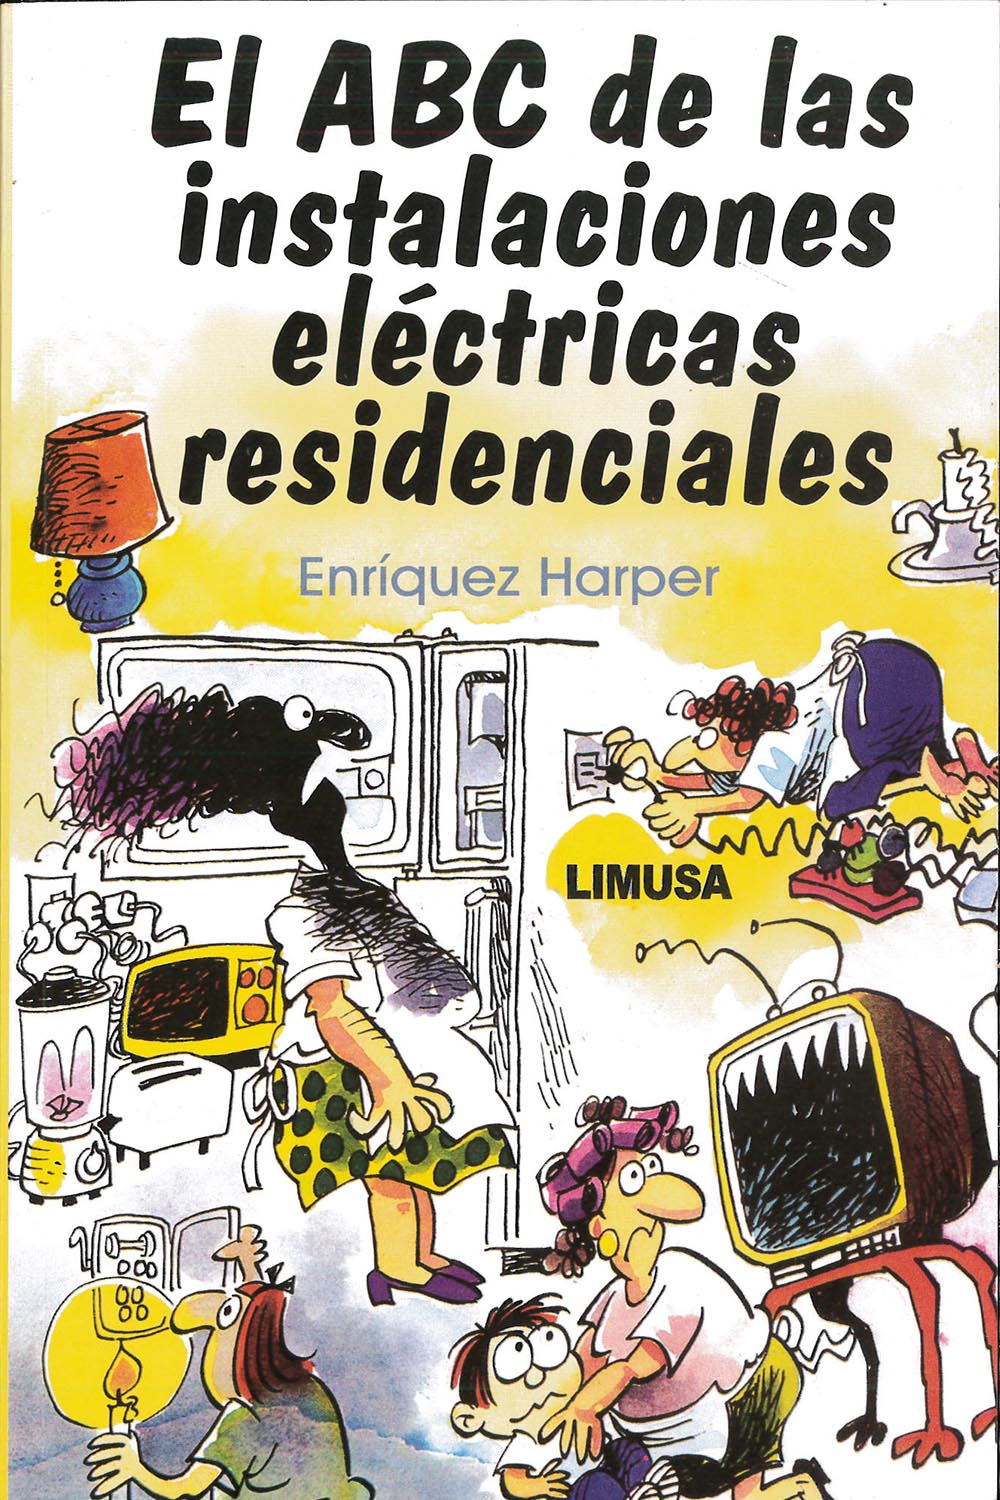 6 / 16 - TK3271 E57 El ABC de las instalaciones eléctricas residenciales
Gilberto Enríquez Harper - Limusa, México 2017